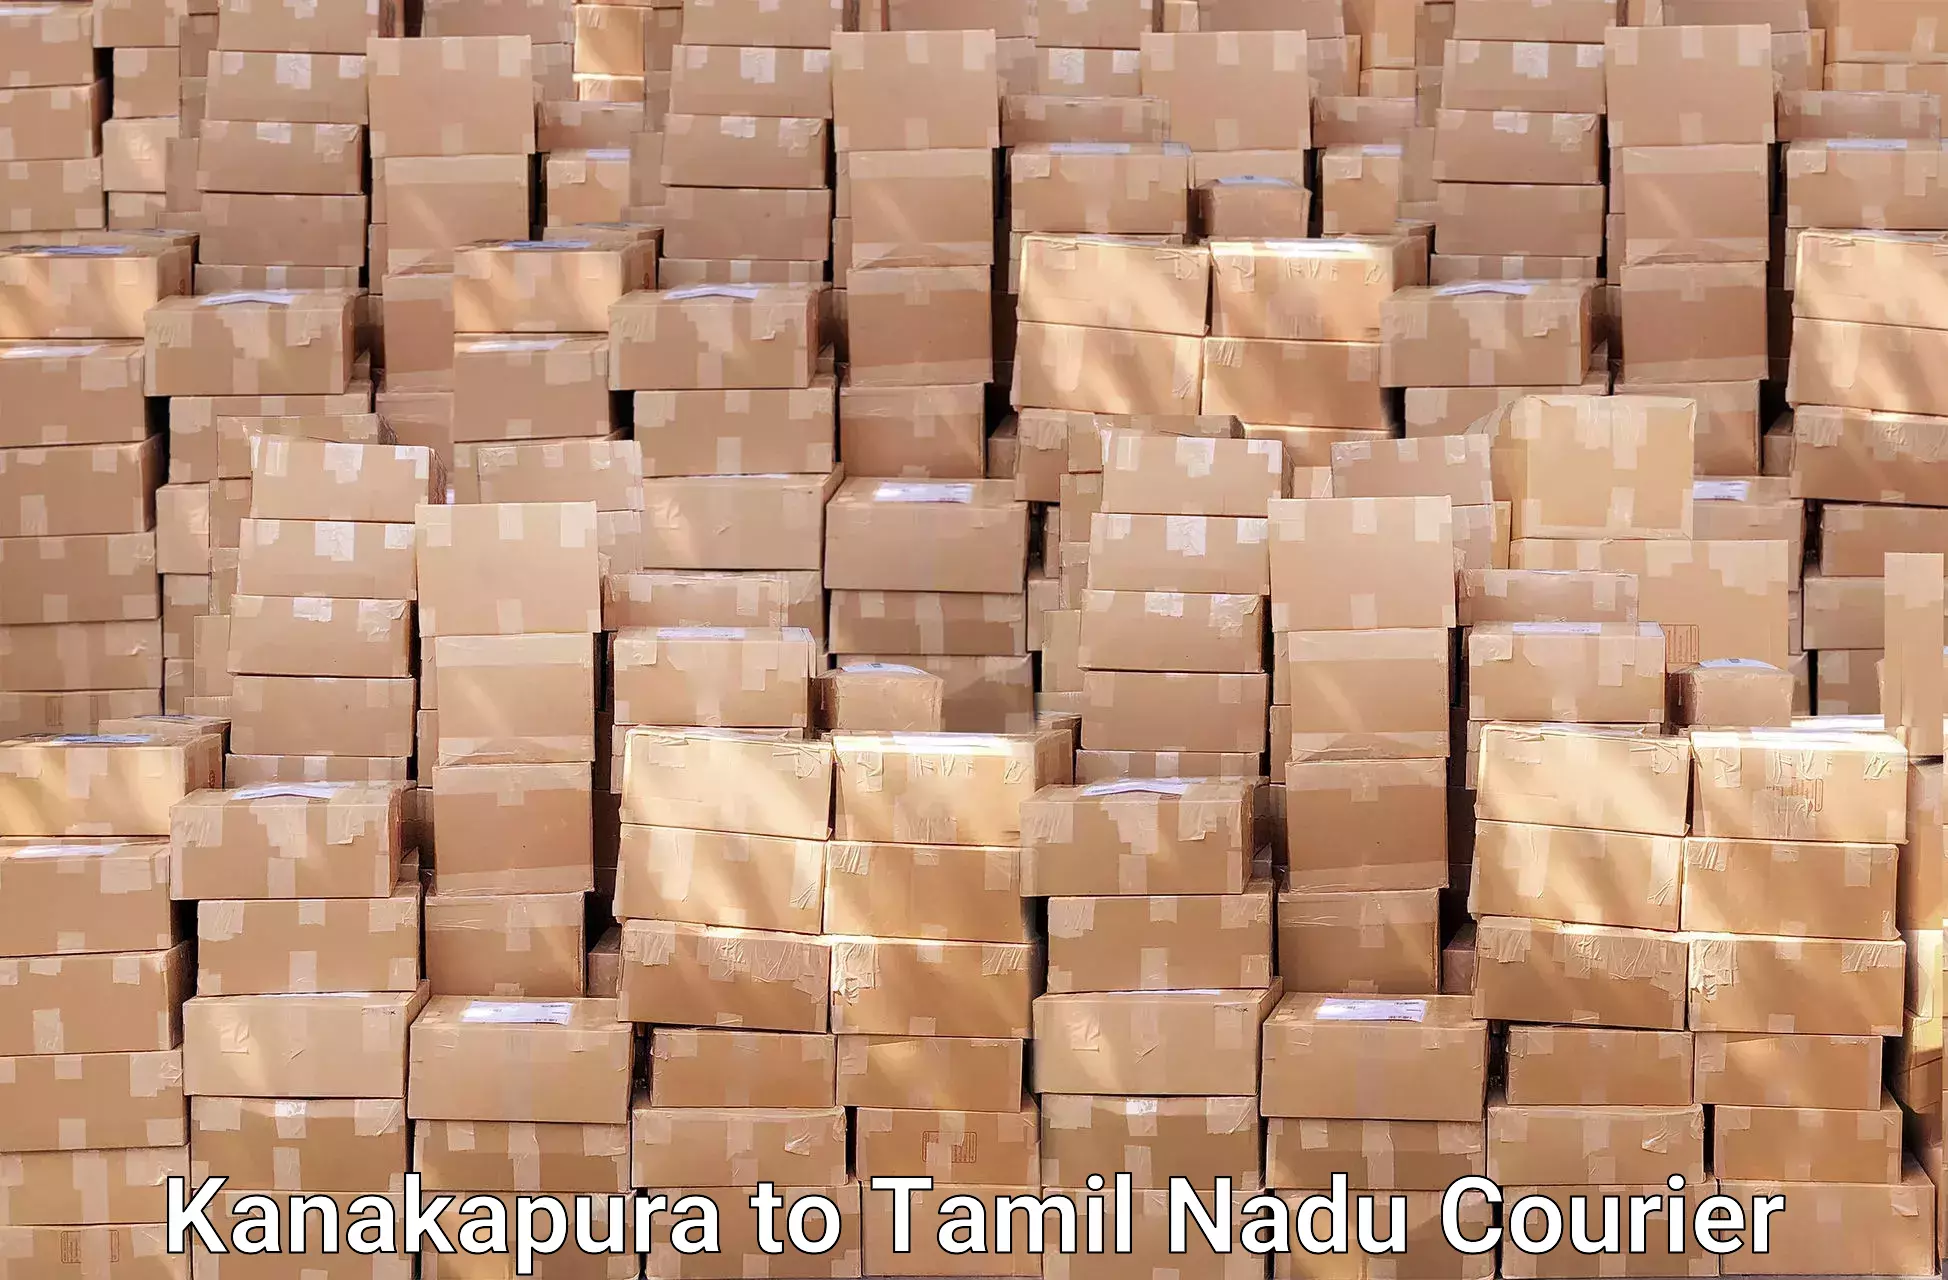 Home goods moving company in Kanakapura to Tindivanam